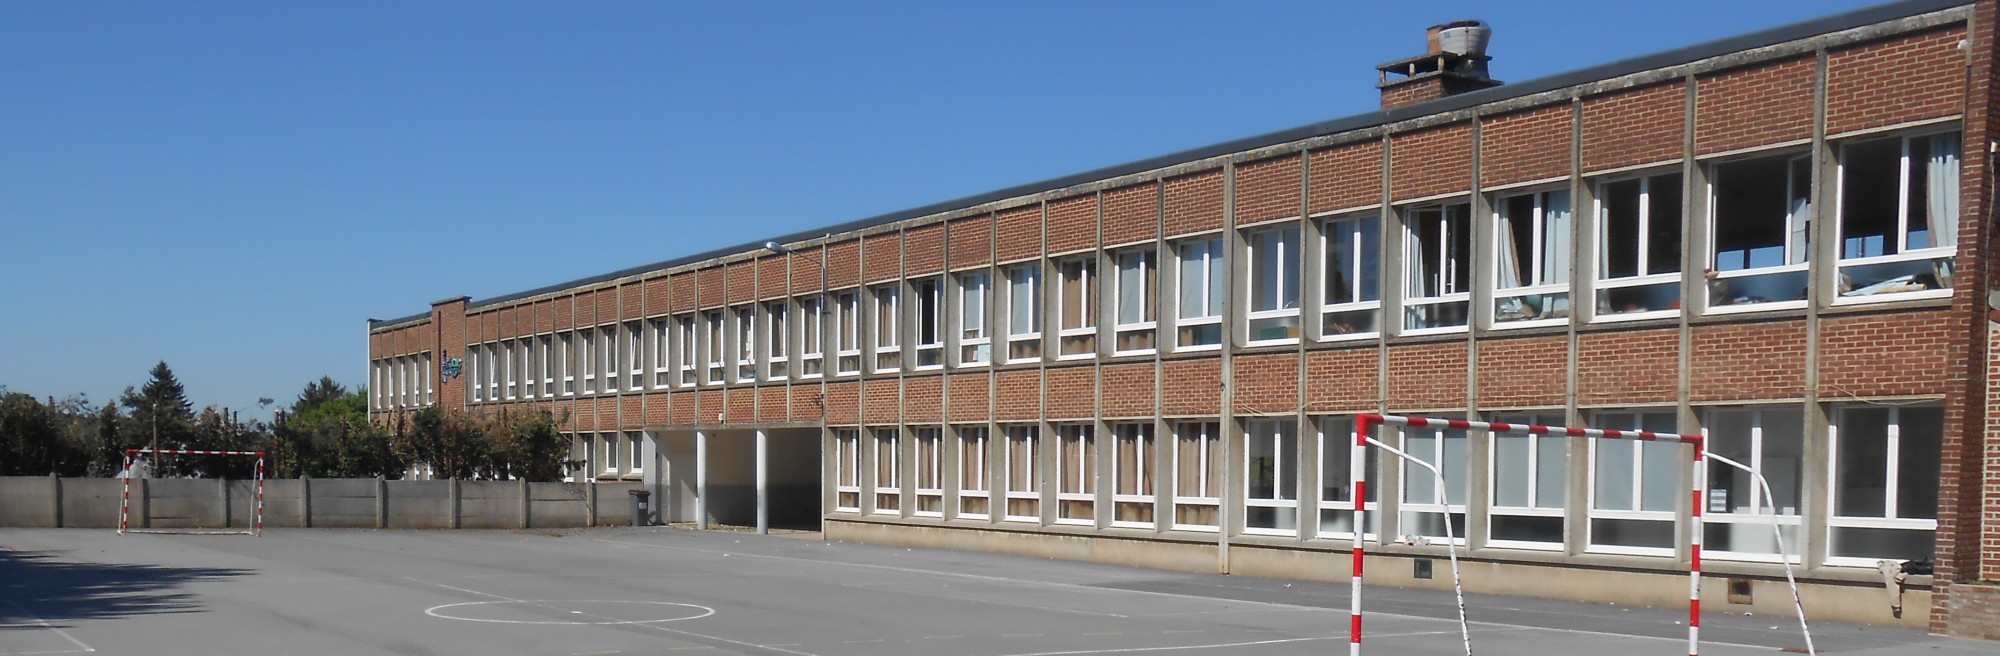 Ecole Gaston Bricout de Walincourt-Selvigny